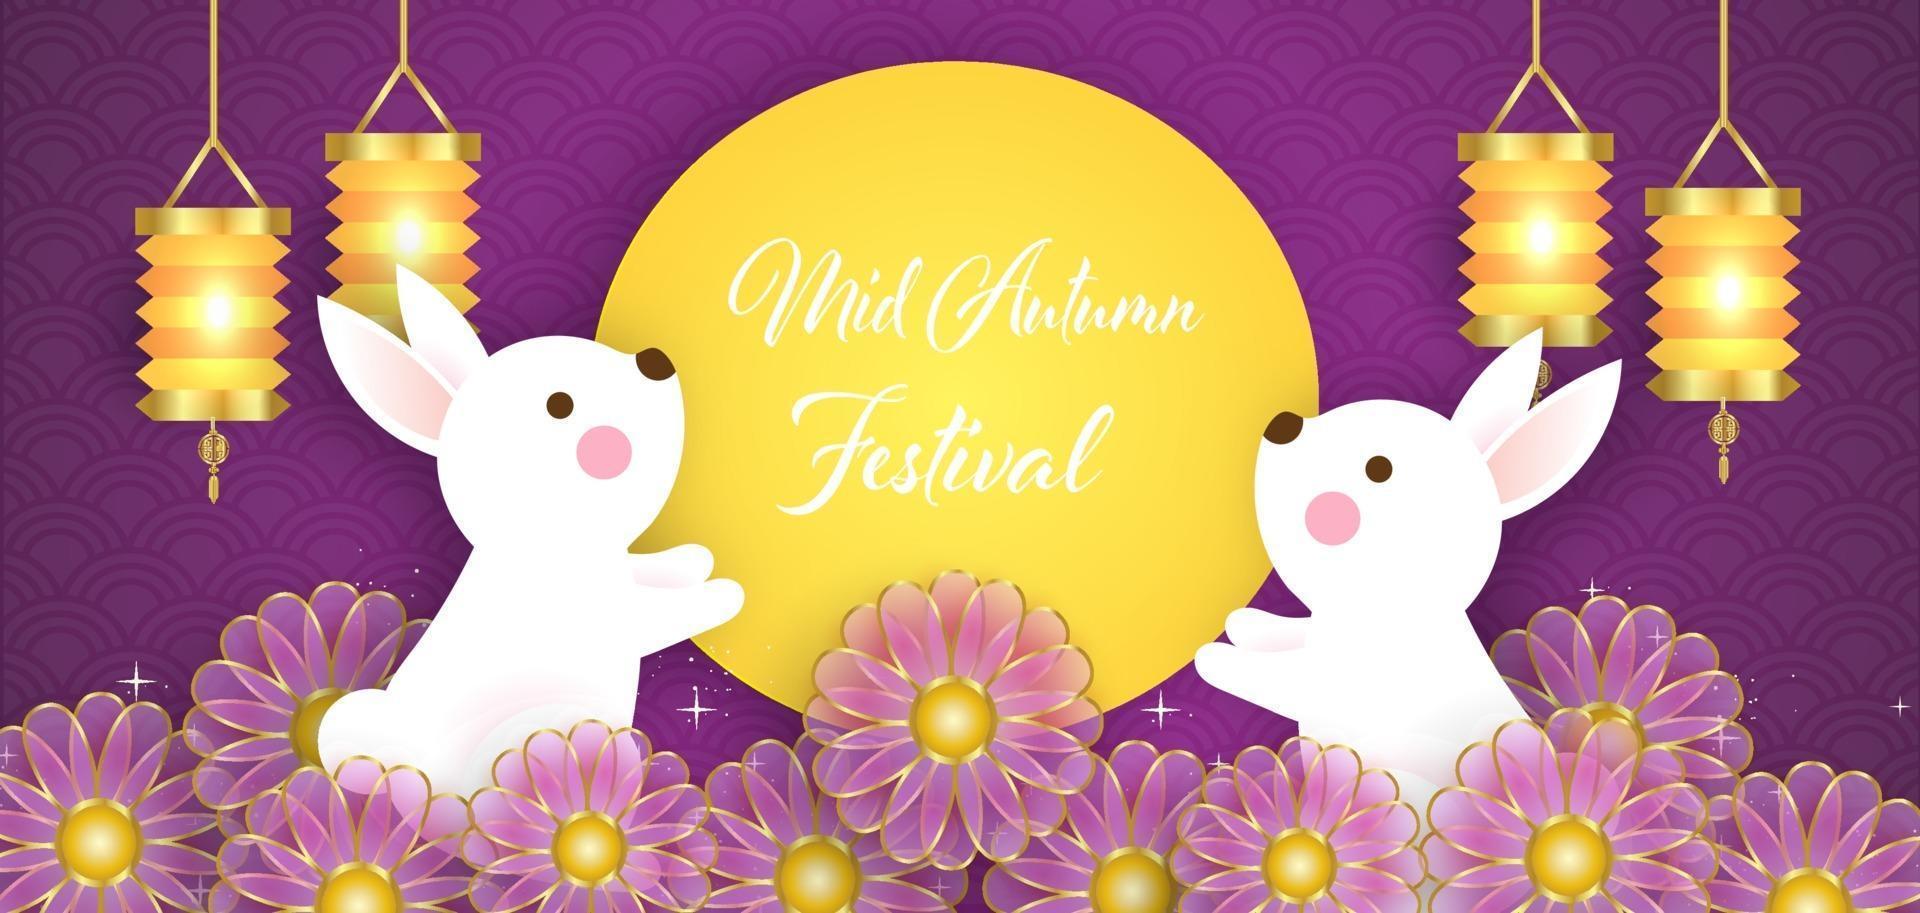 medio herfst festival banner met schattige konijnen. vector